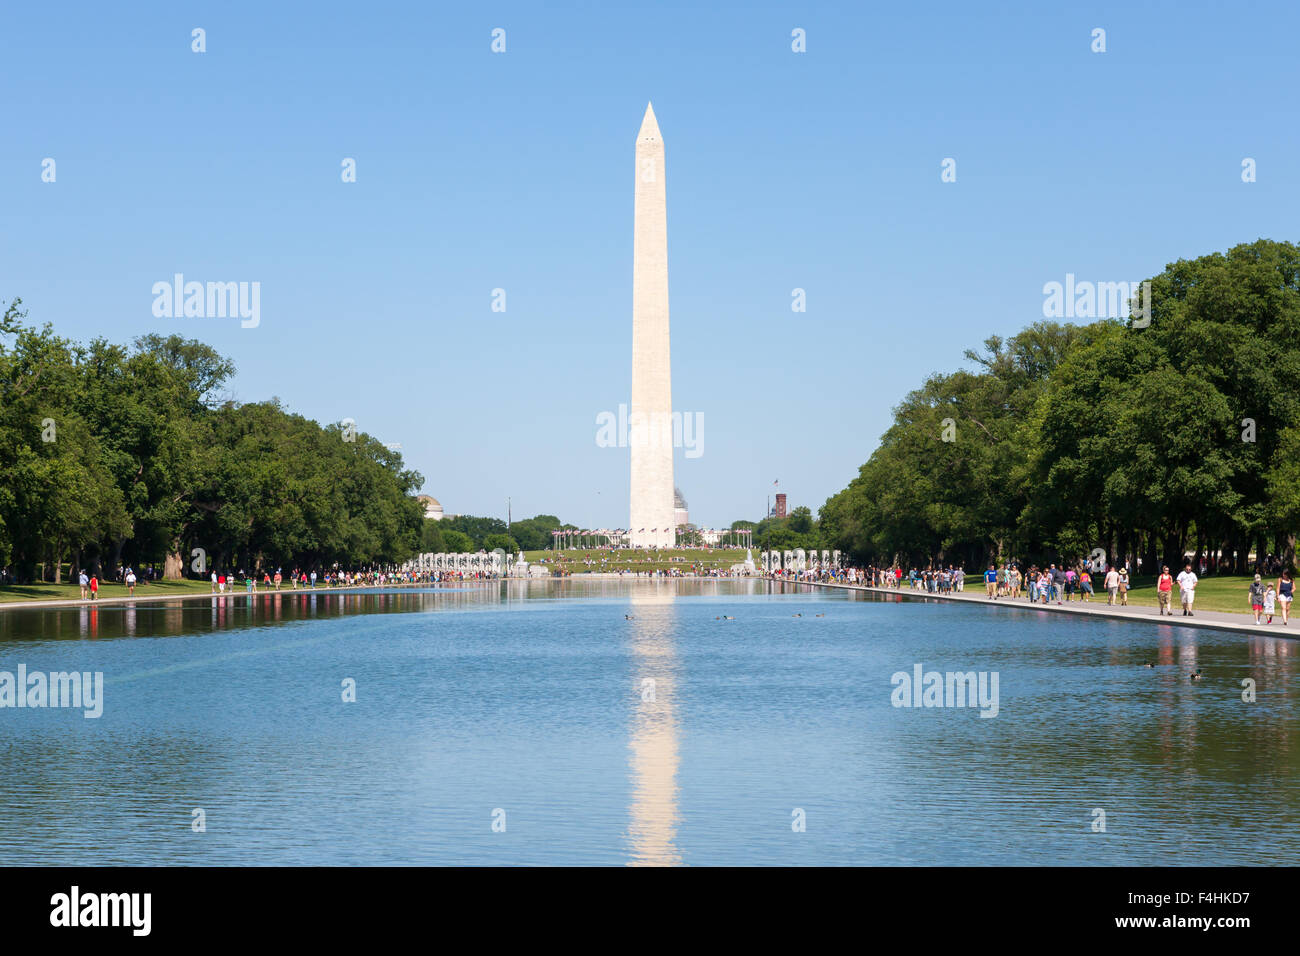 Das Washington Monument spiegelt sich in der Lincoln Memorial Reflecting Pool auf der National Mall in Washington, DC. Stockfoto